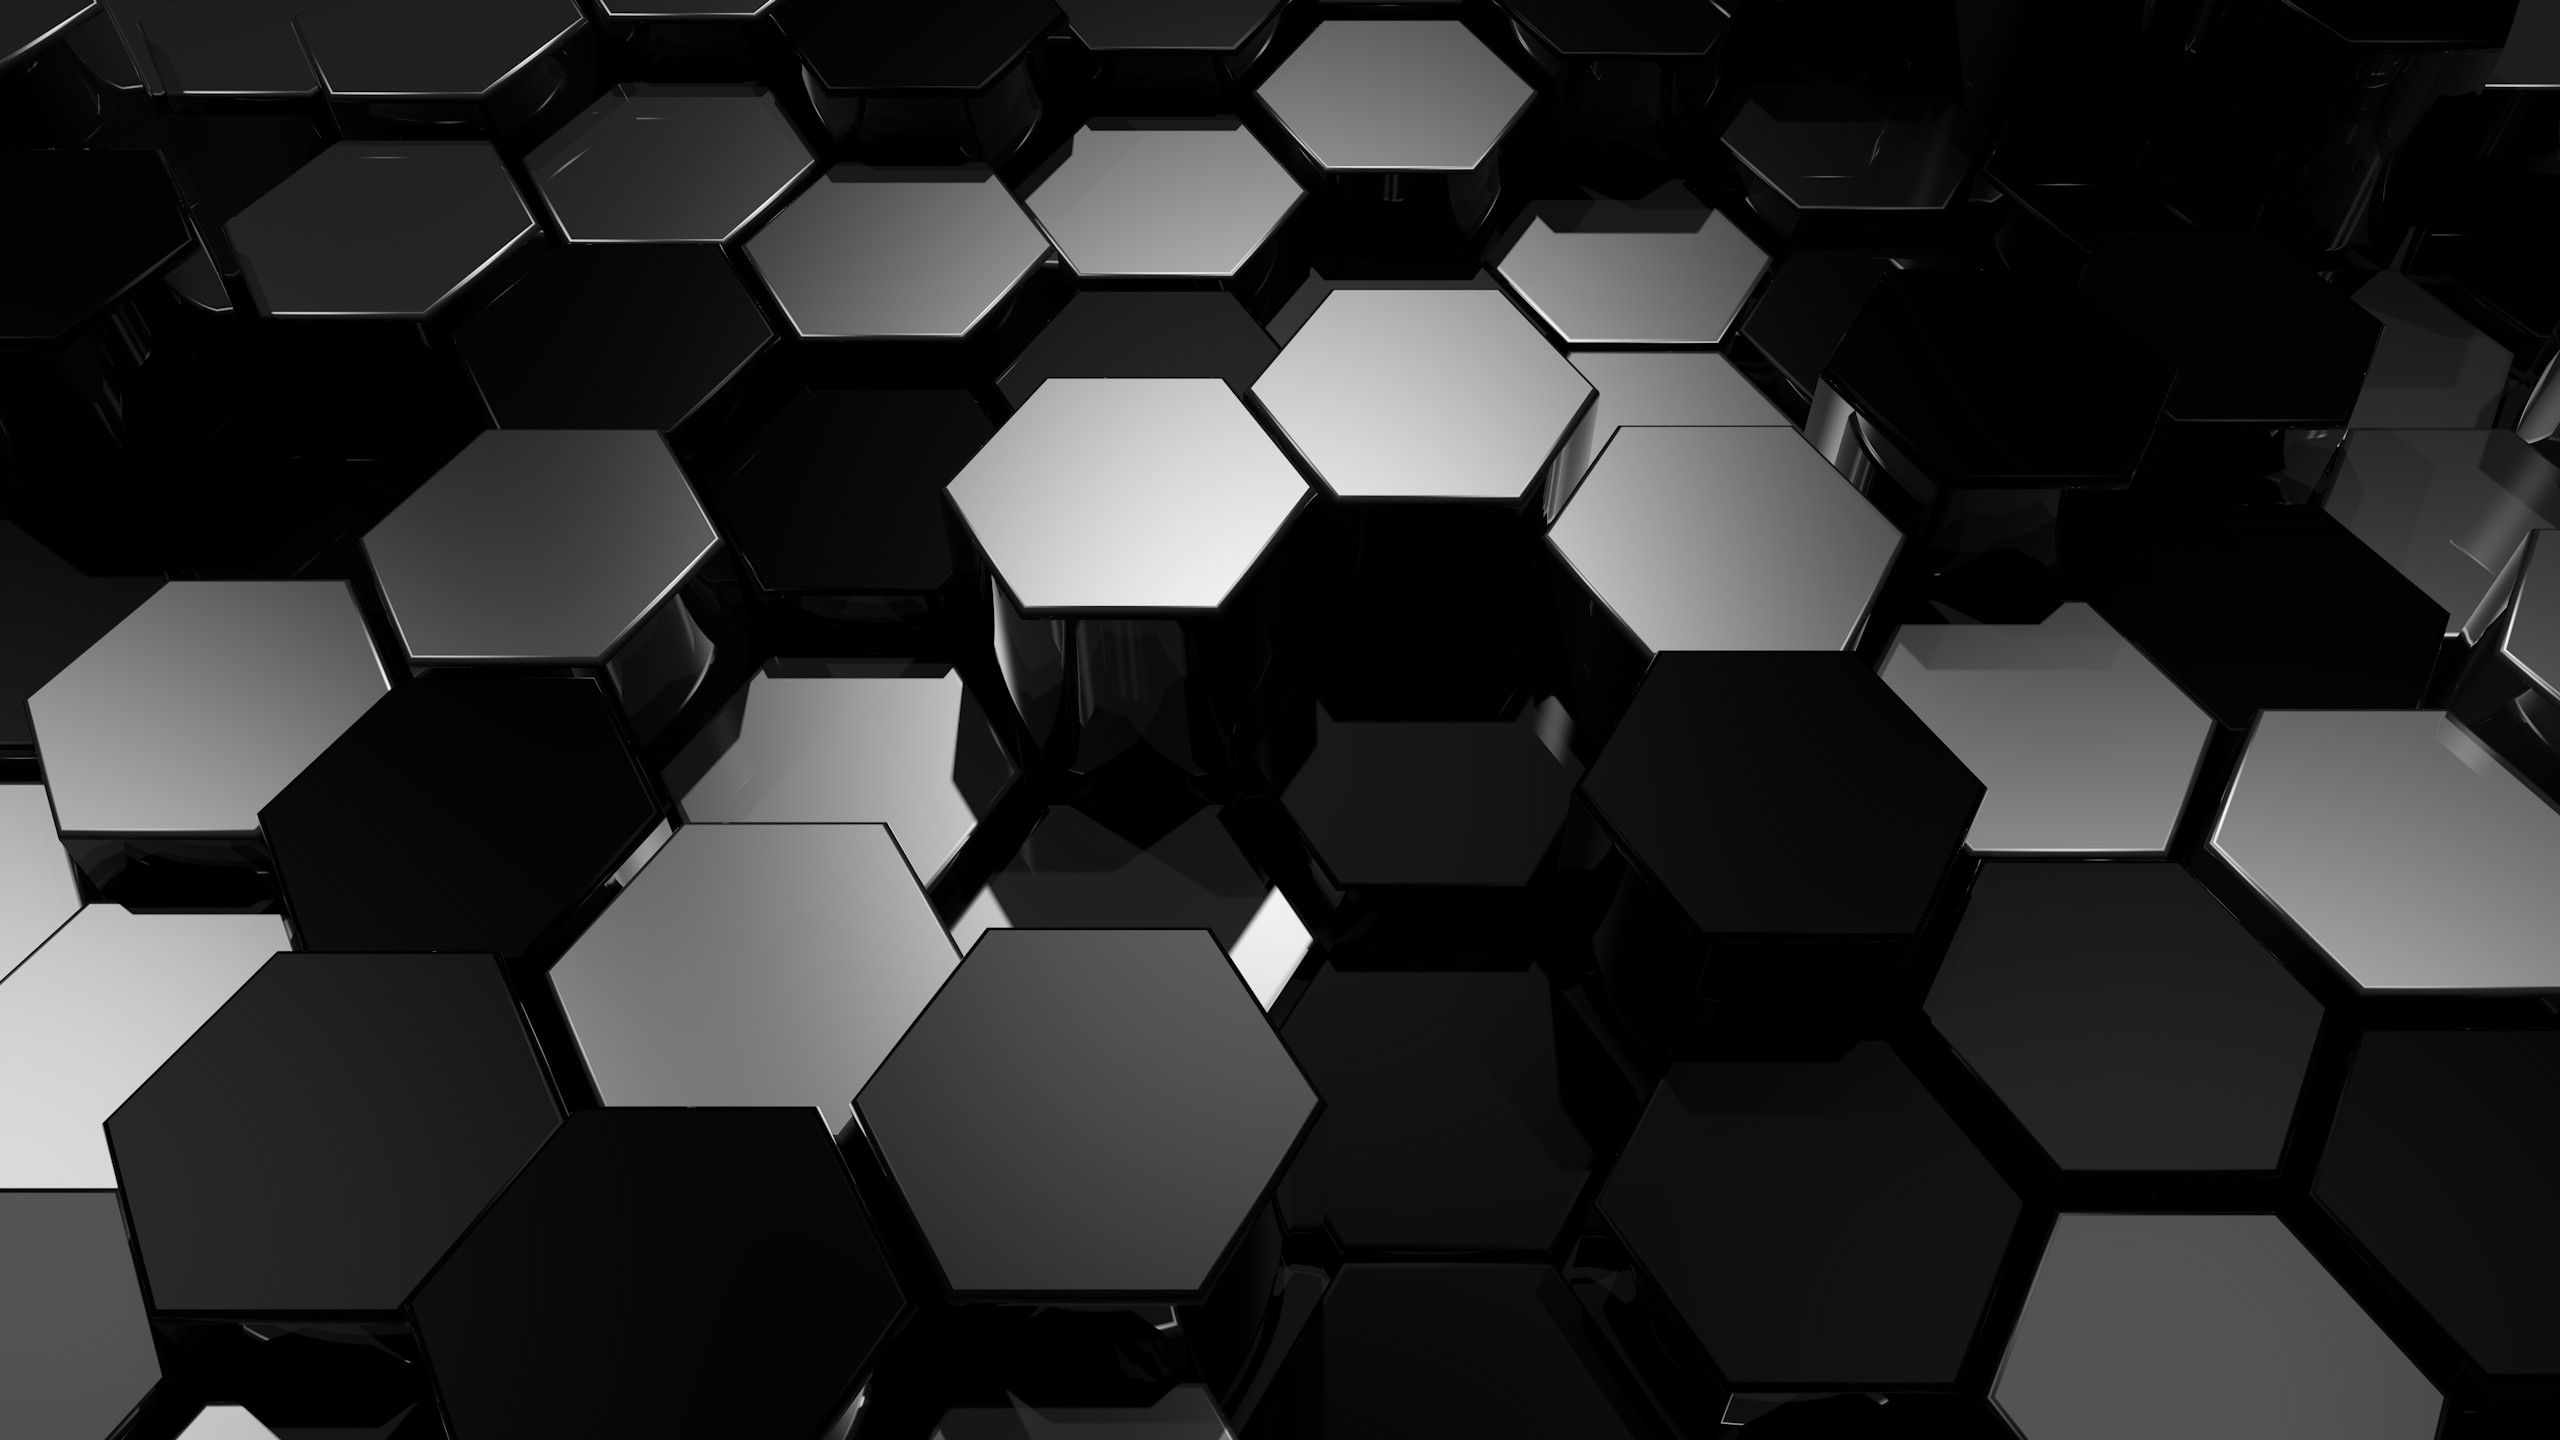 3D Hexagon Wallpaper Free 3D Hexagon Background